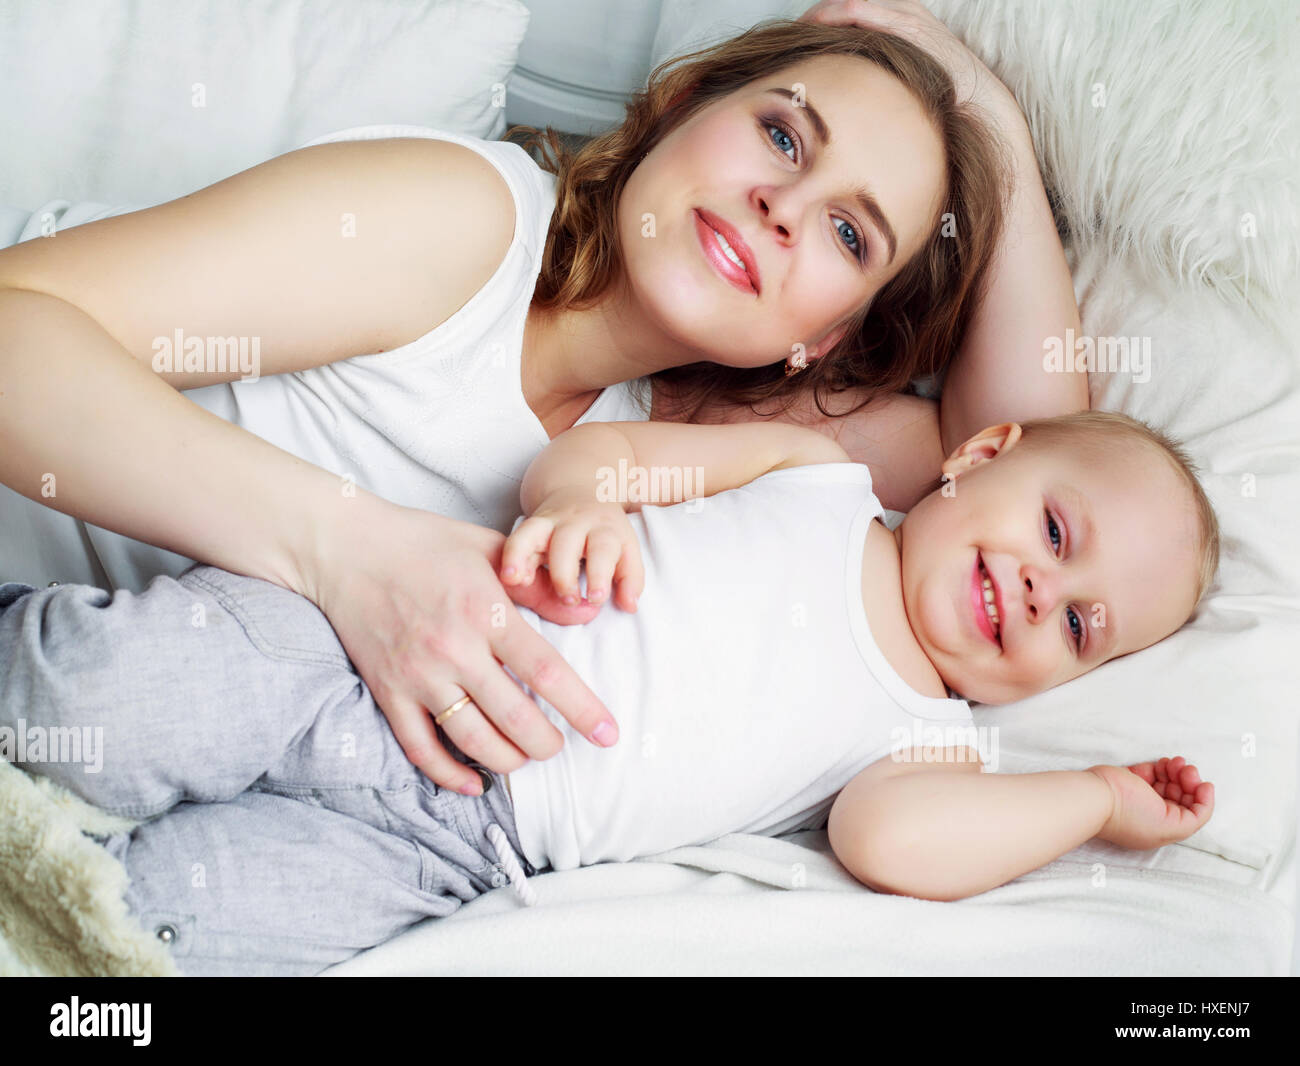 Молодая мама в постели. Молодые мамы в постели. Молодые мамочки в постели. Очень красивые мамы в постели. Молодые мамы в постели грудным сыном.